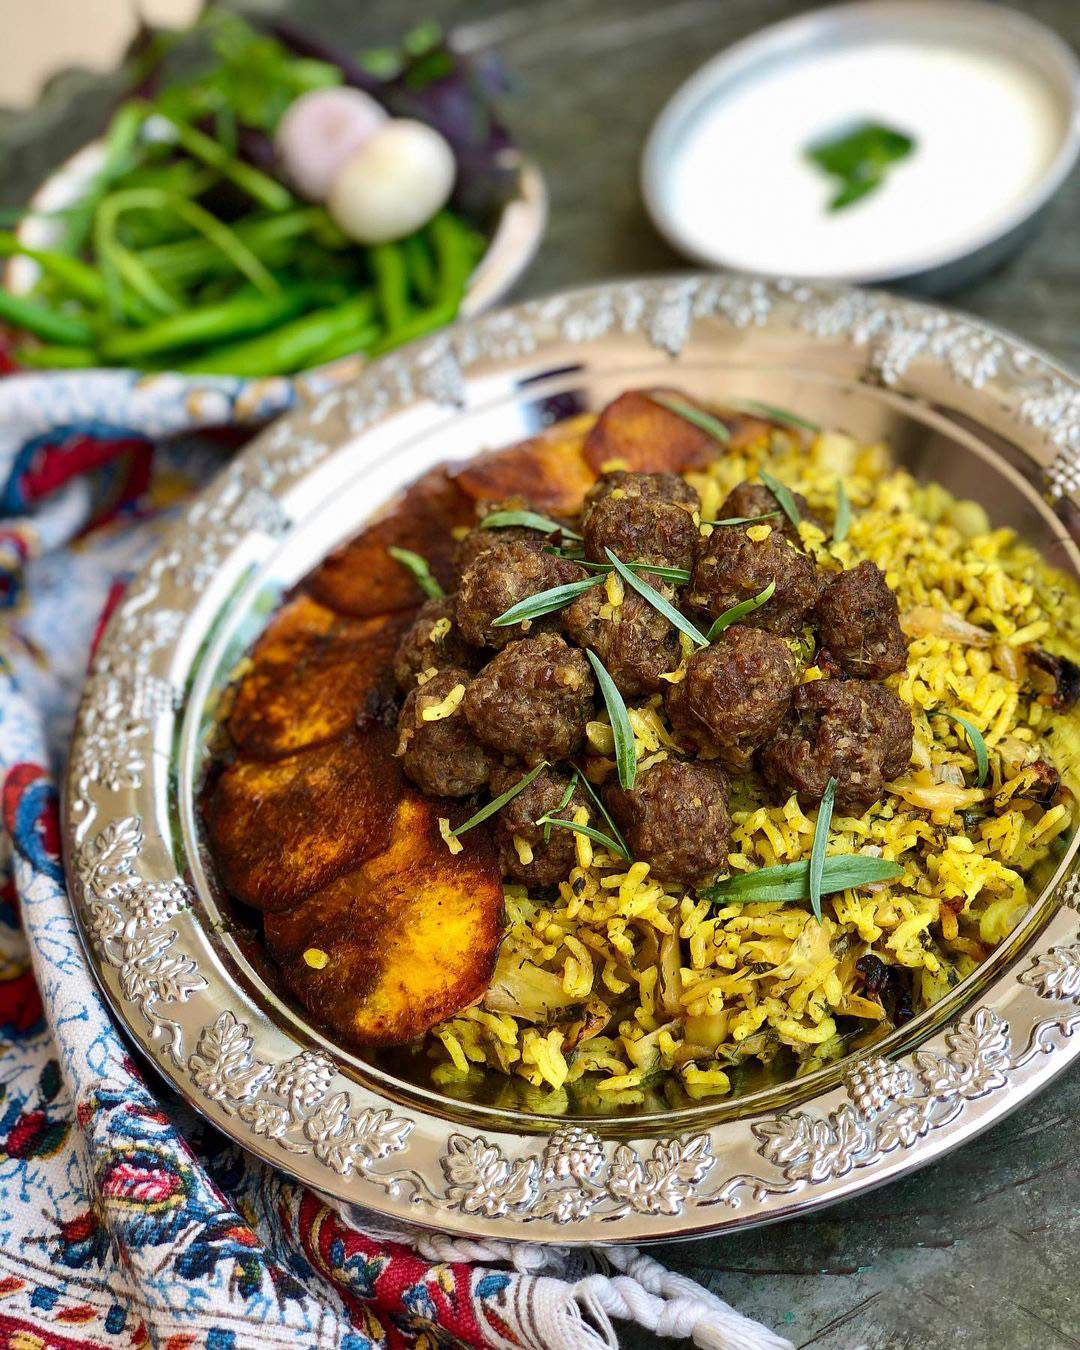 آموزش آشپزی کامل پخت کلم پلو شیرازی سنتی برای ۴ نفر